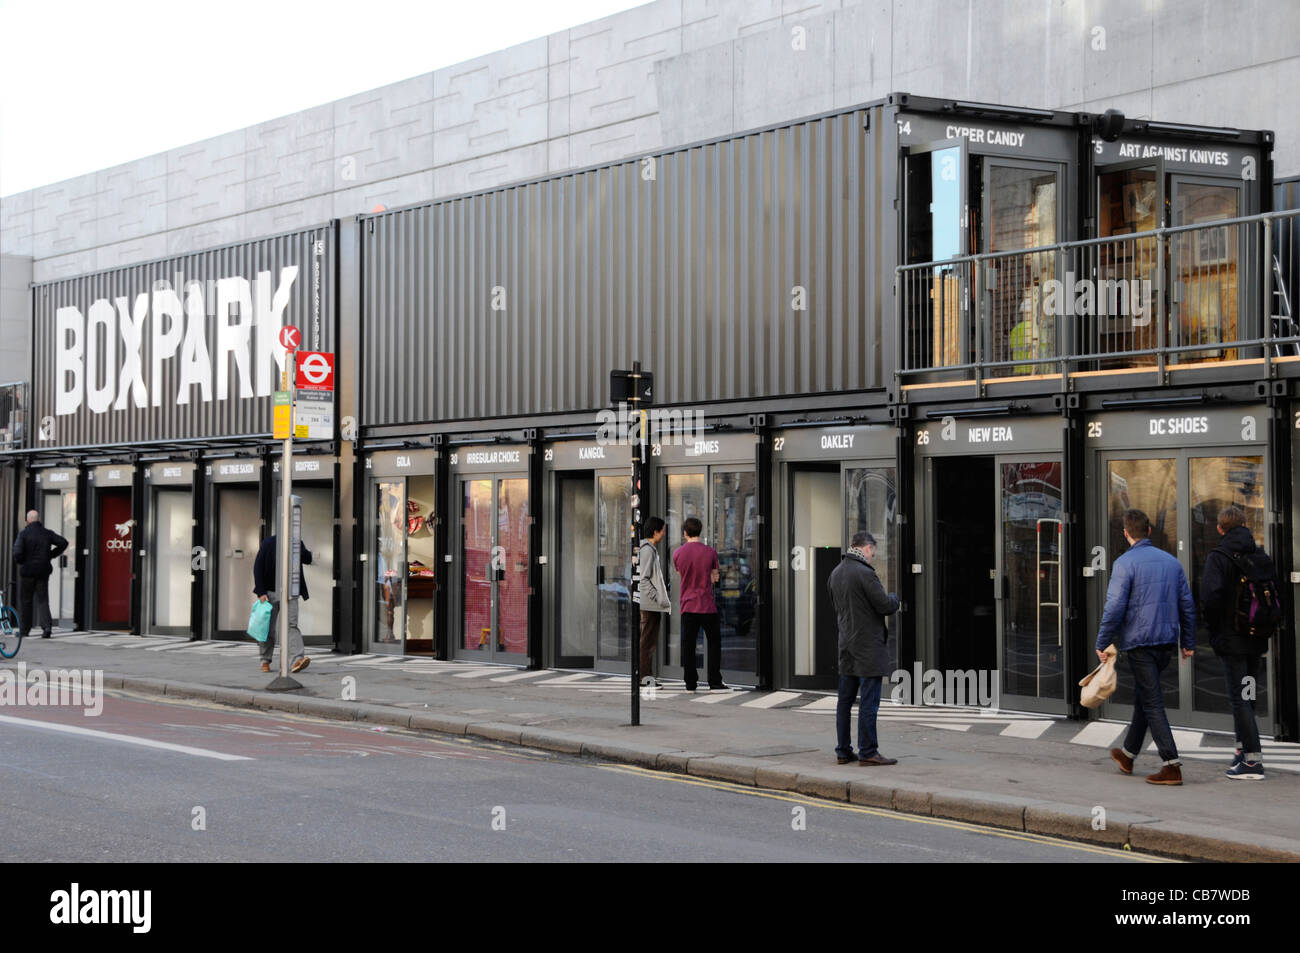 Shoreditch Boxpark shop Einheiten aus Stapeln der Container zusammen und bezeichnet als Pop Up mall London England UK gebildet Stockfoto